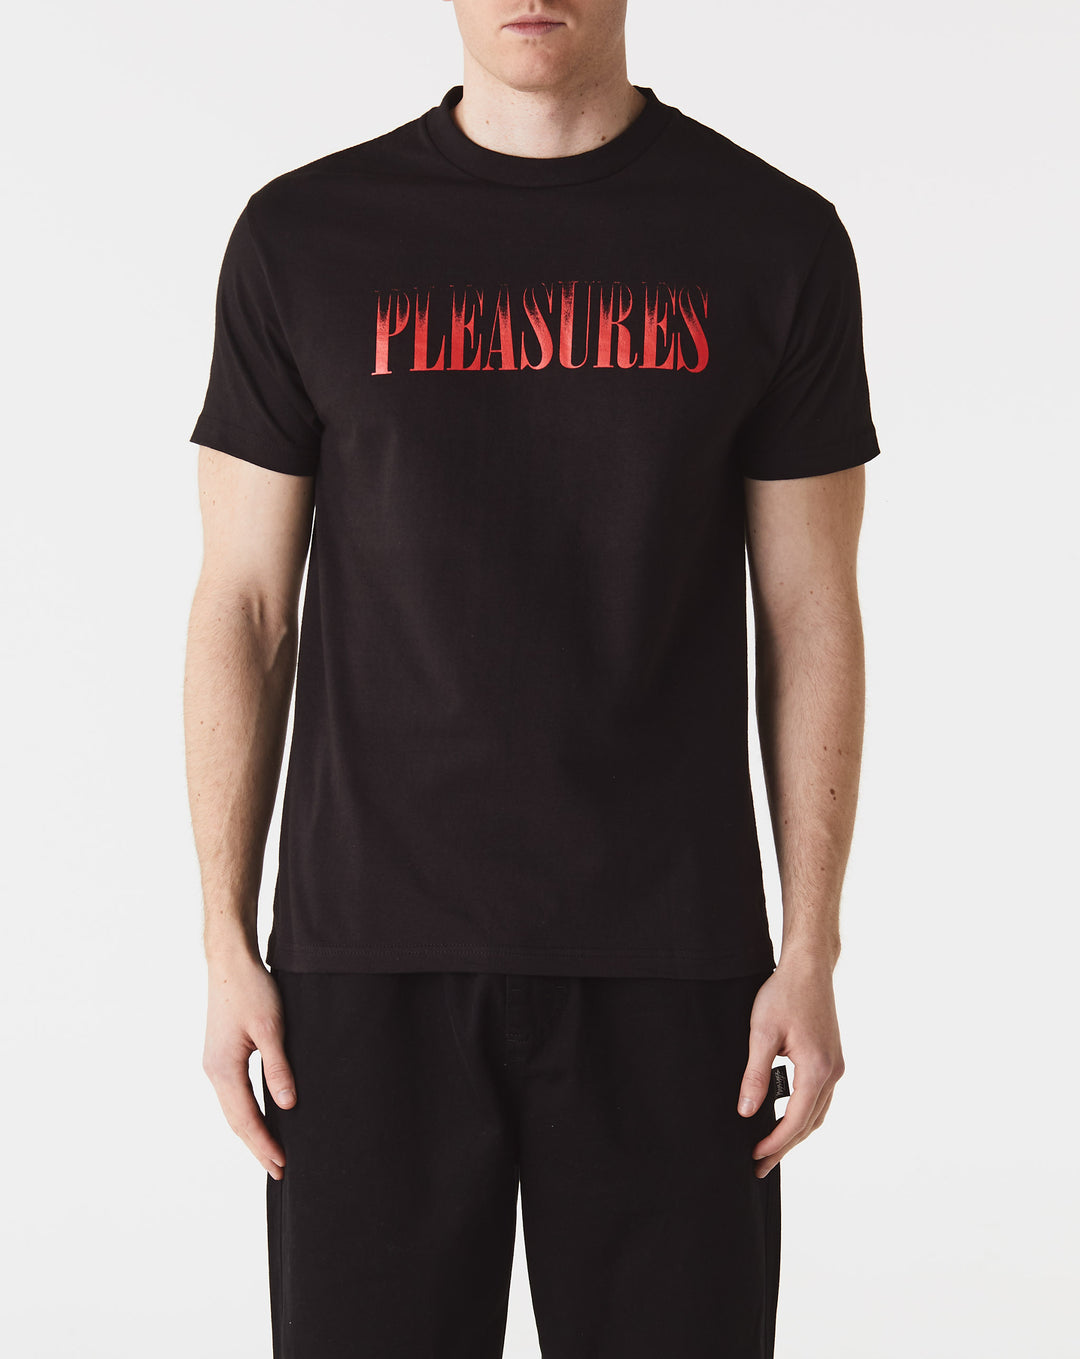 Pleasures Crumble T-Shirt  - XHIBITION